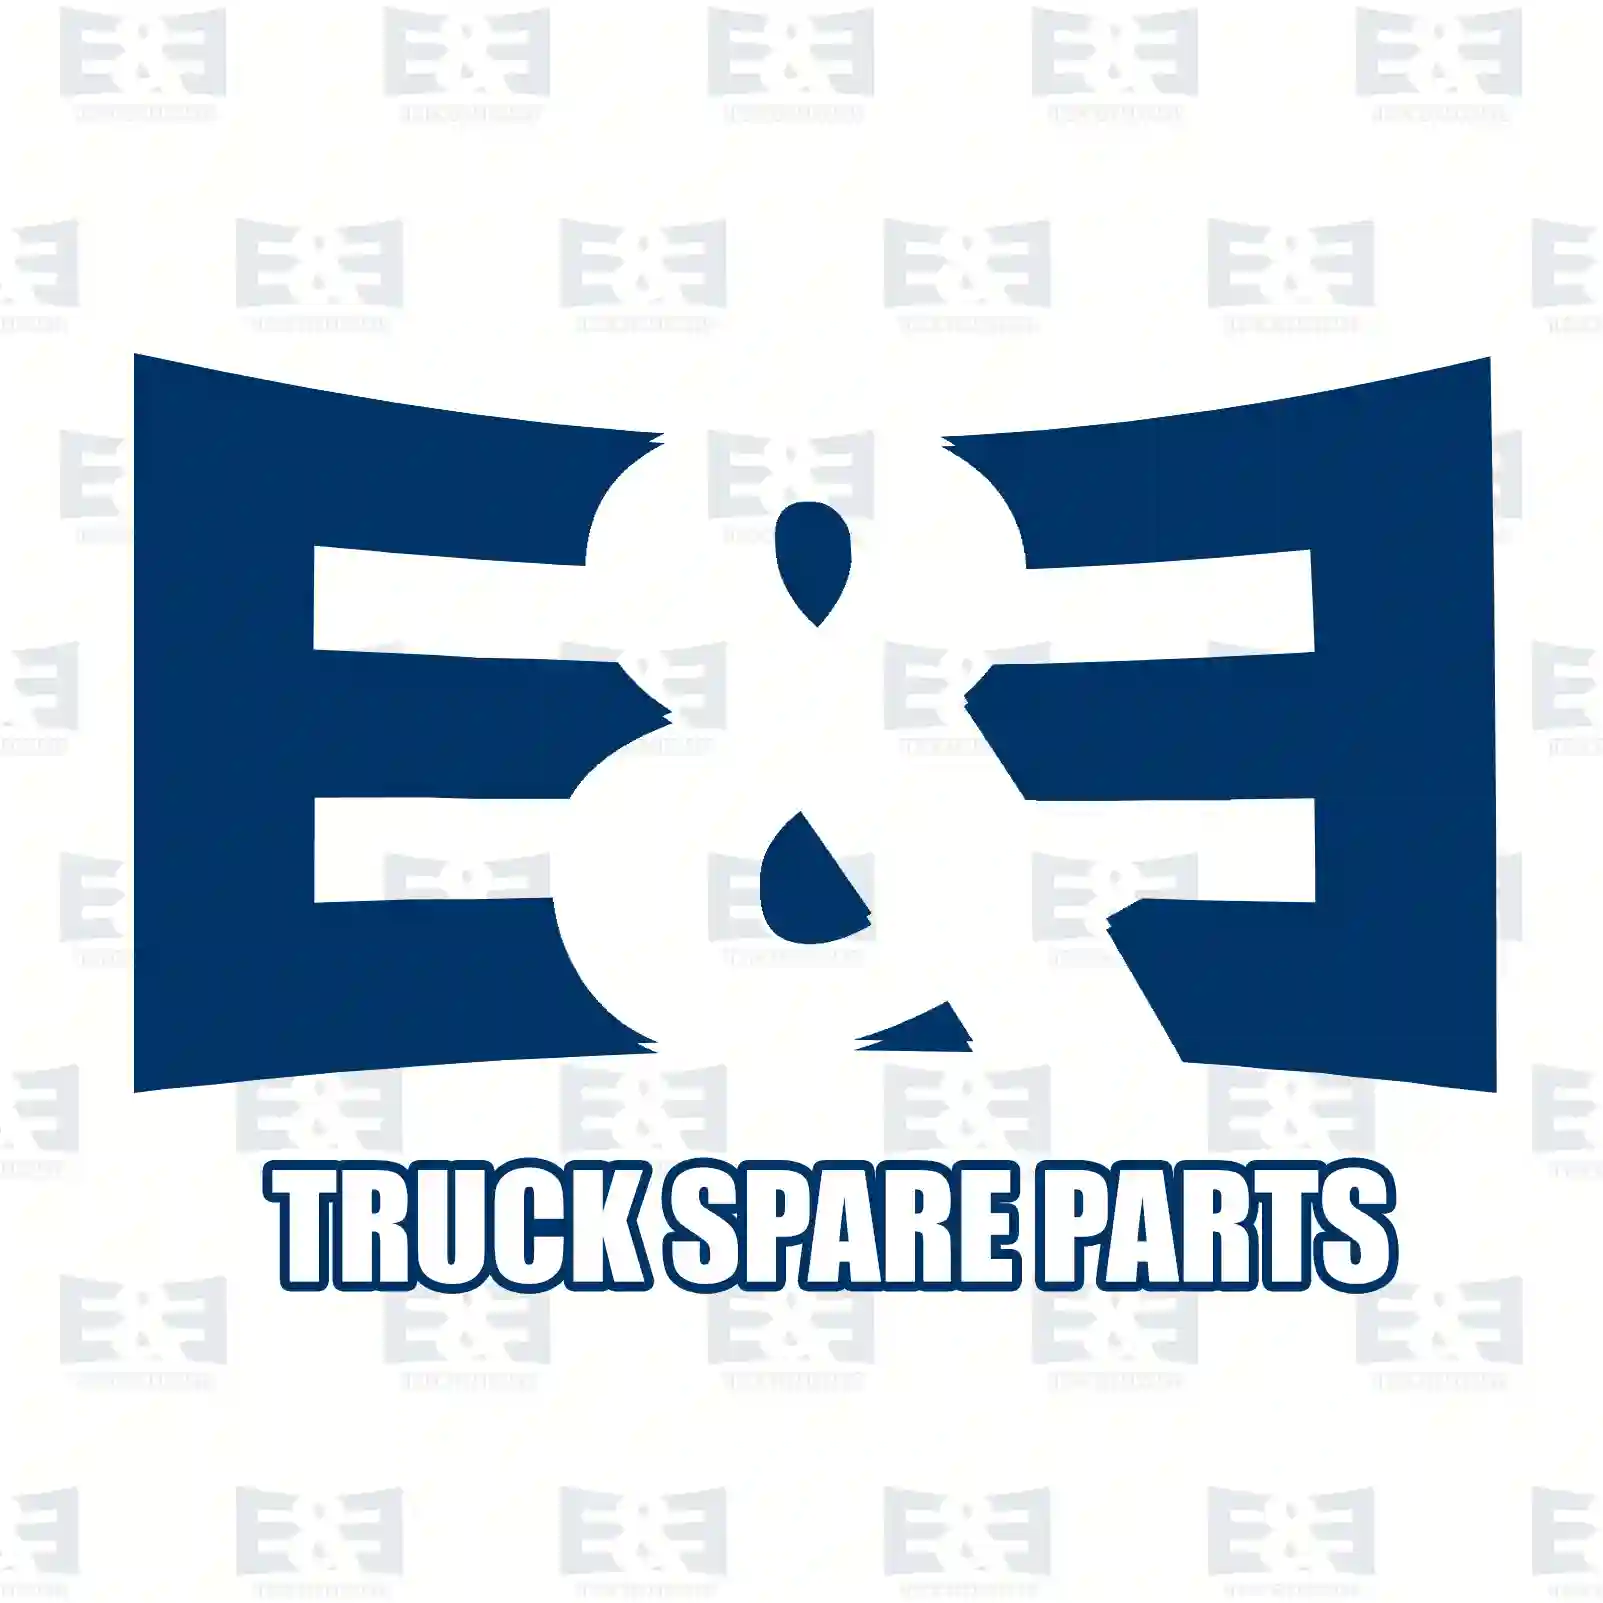 Fan with clutch, 2E2201679, 3979922, 85000072 ||  2E2201679 E&E Truck Spare Parts | Truck Spare Parts, Auotomotive Spare Parts Fan with clutch, 2E2201679, 3979922, 85000072 ||  2E2201679 E&E Truck Spare Parts | Truck Spare Parts, Auotomotive Spare Parts